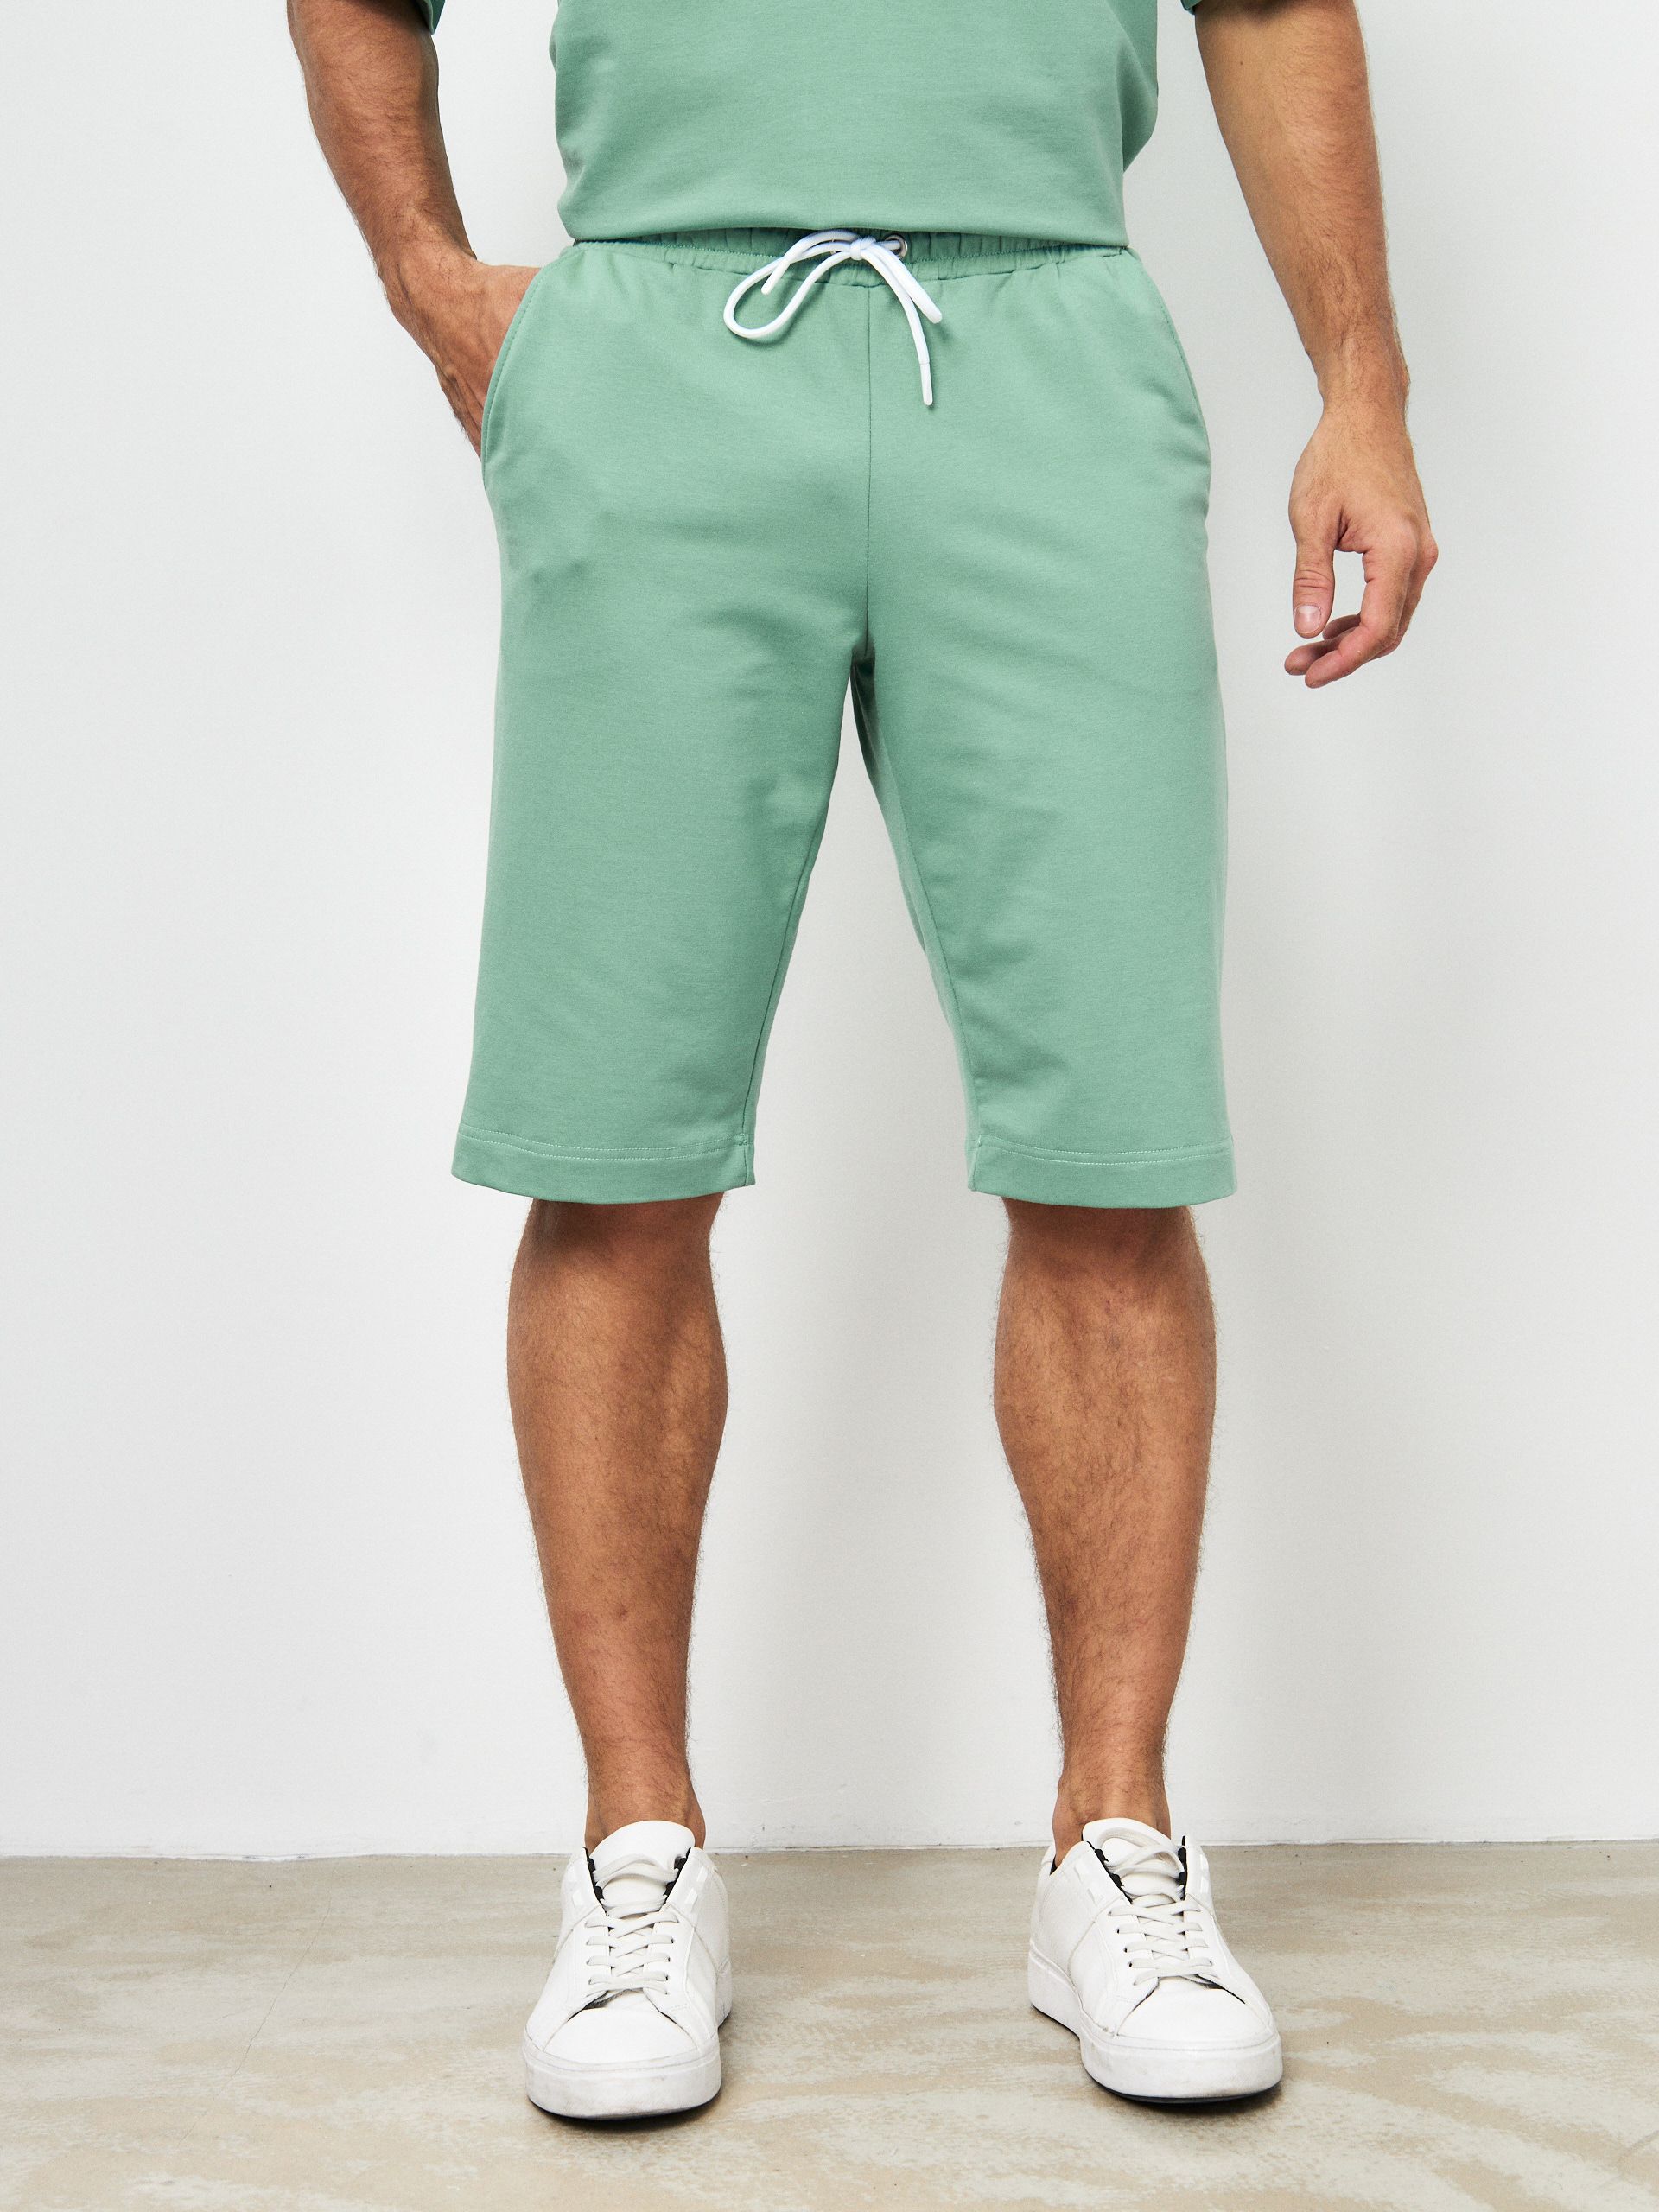 Повседневные шорты мужские MOM №1 MOM-88-3180 зеленые 2XL